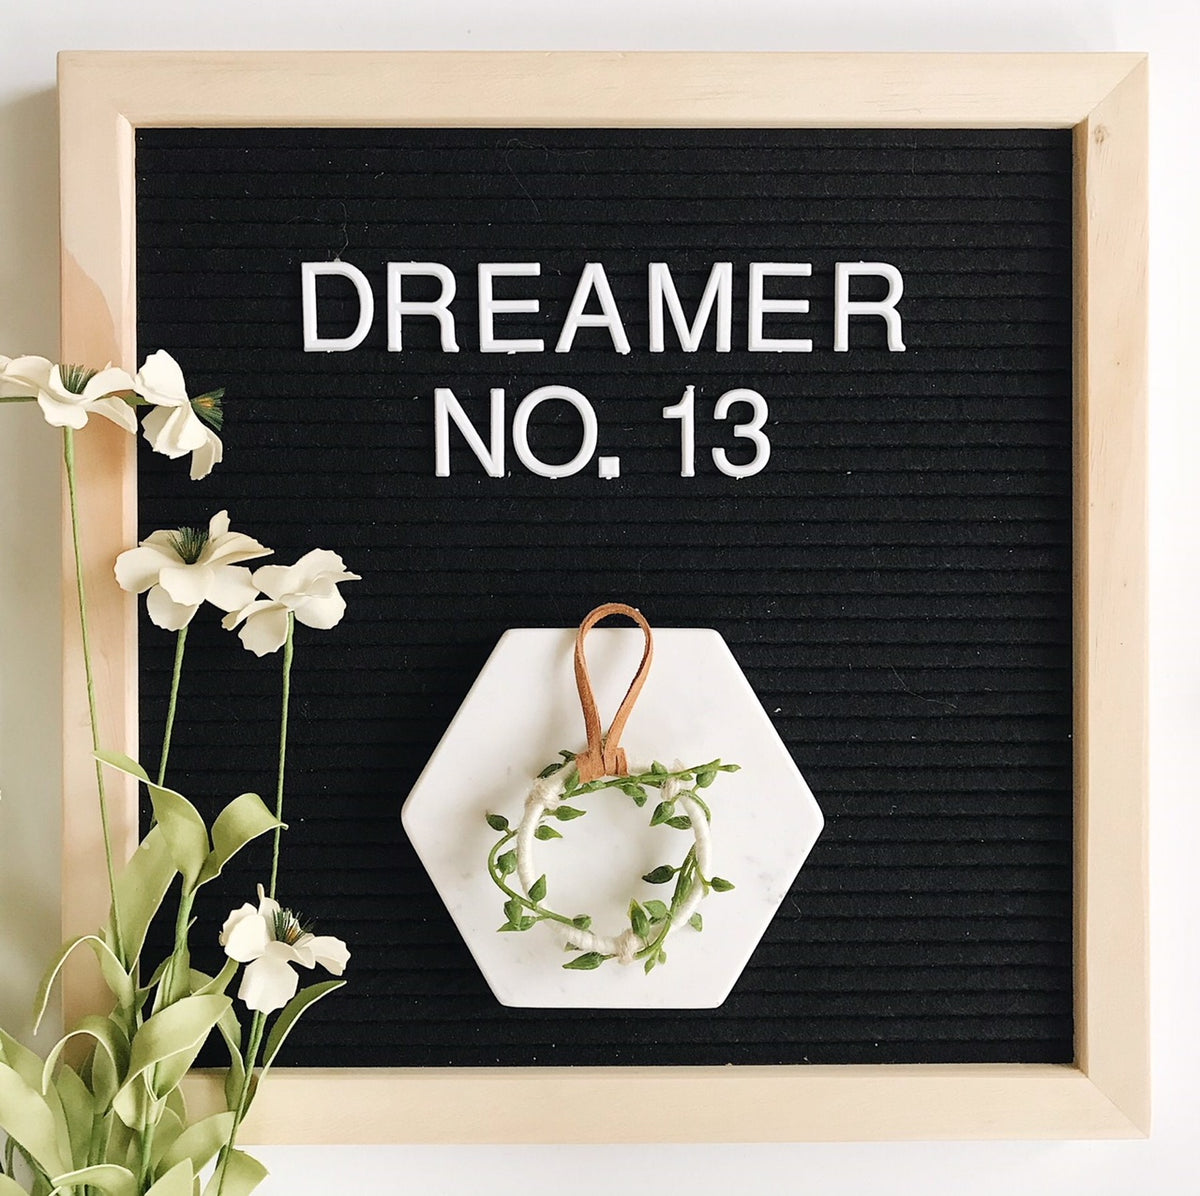 Dreamer No. 13 | 100 Days of Dreamers